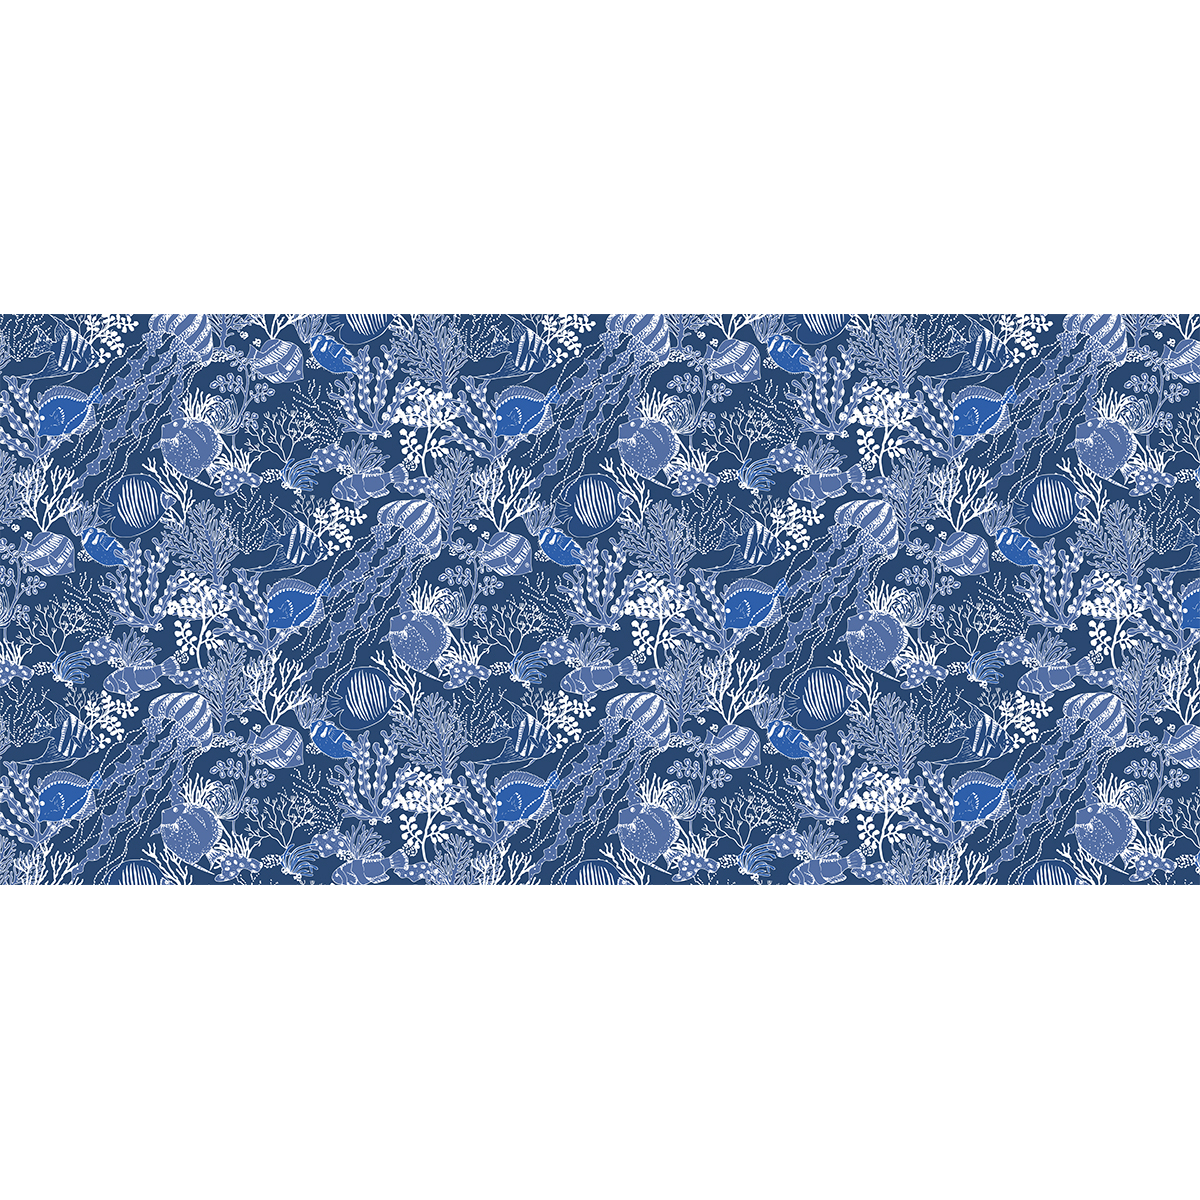 Allover pattern wallpaper En apnée - Collection Axelle Design - Acte-Deco